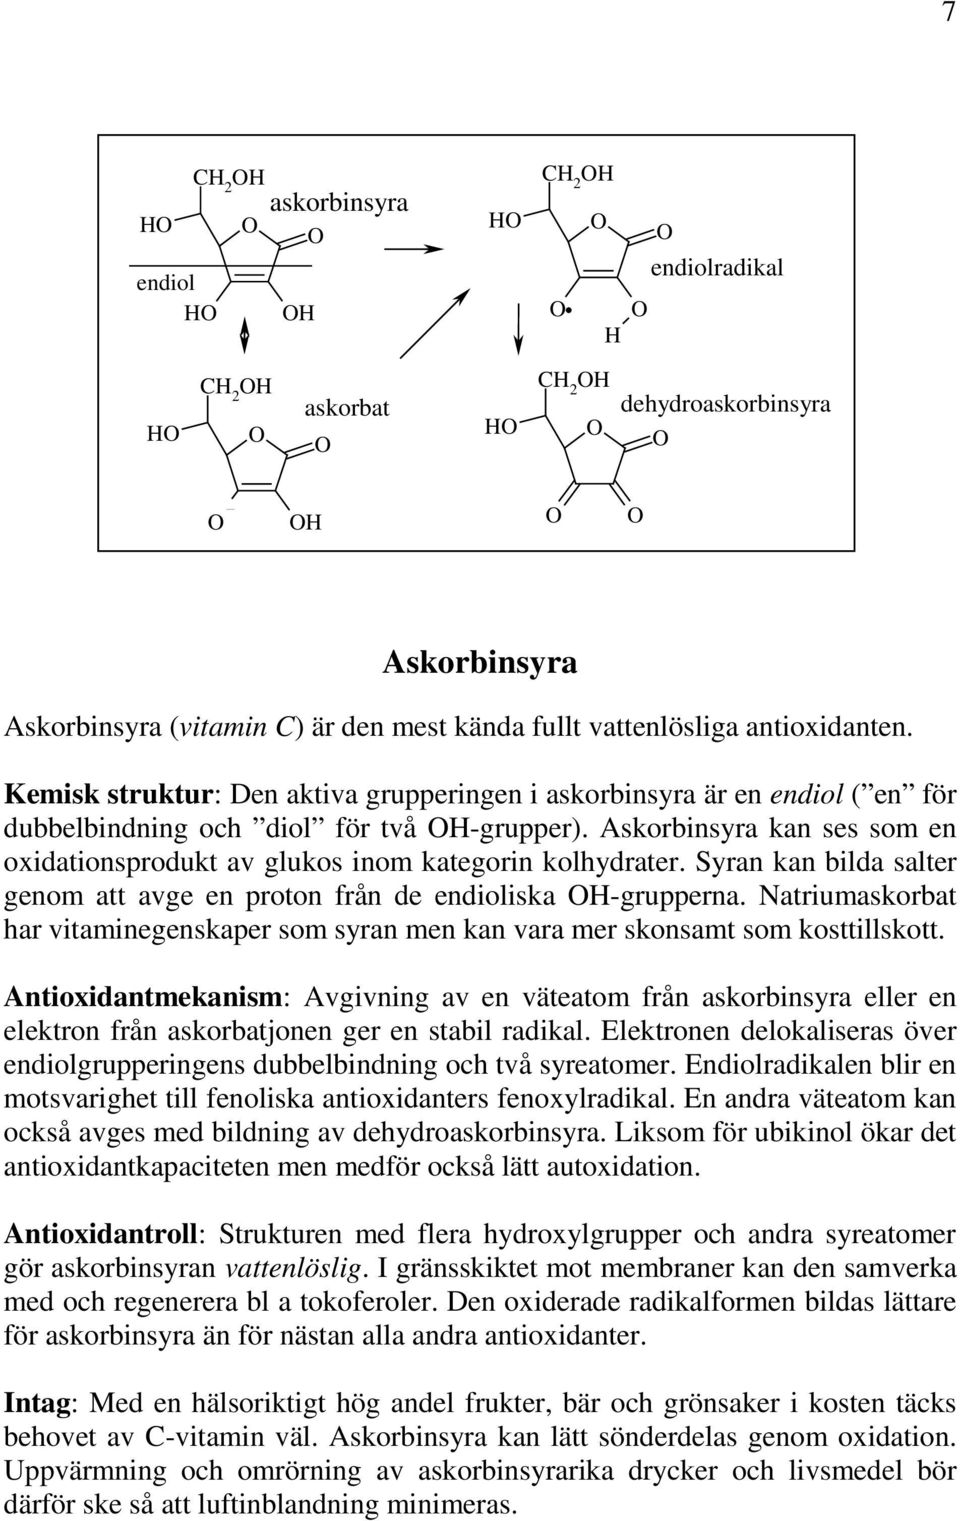 Askorbinsyra kan ses som en oxidationsprodukt av glukos inom kategorin kolhydrater. Syran kan bilda salter genom att avge en proton från de endioliska H-grupperna.